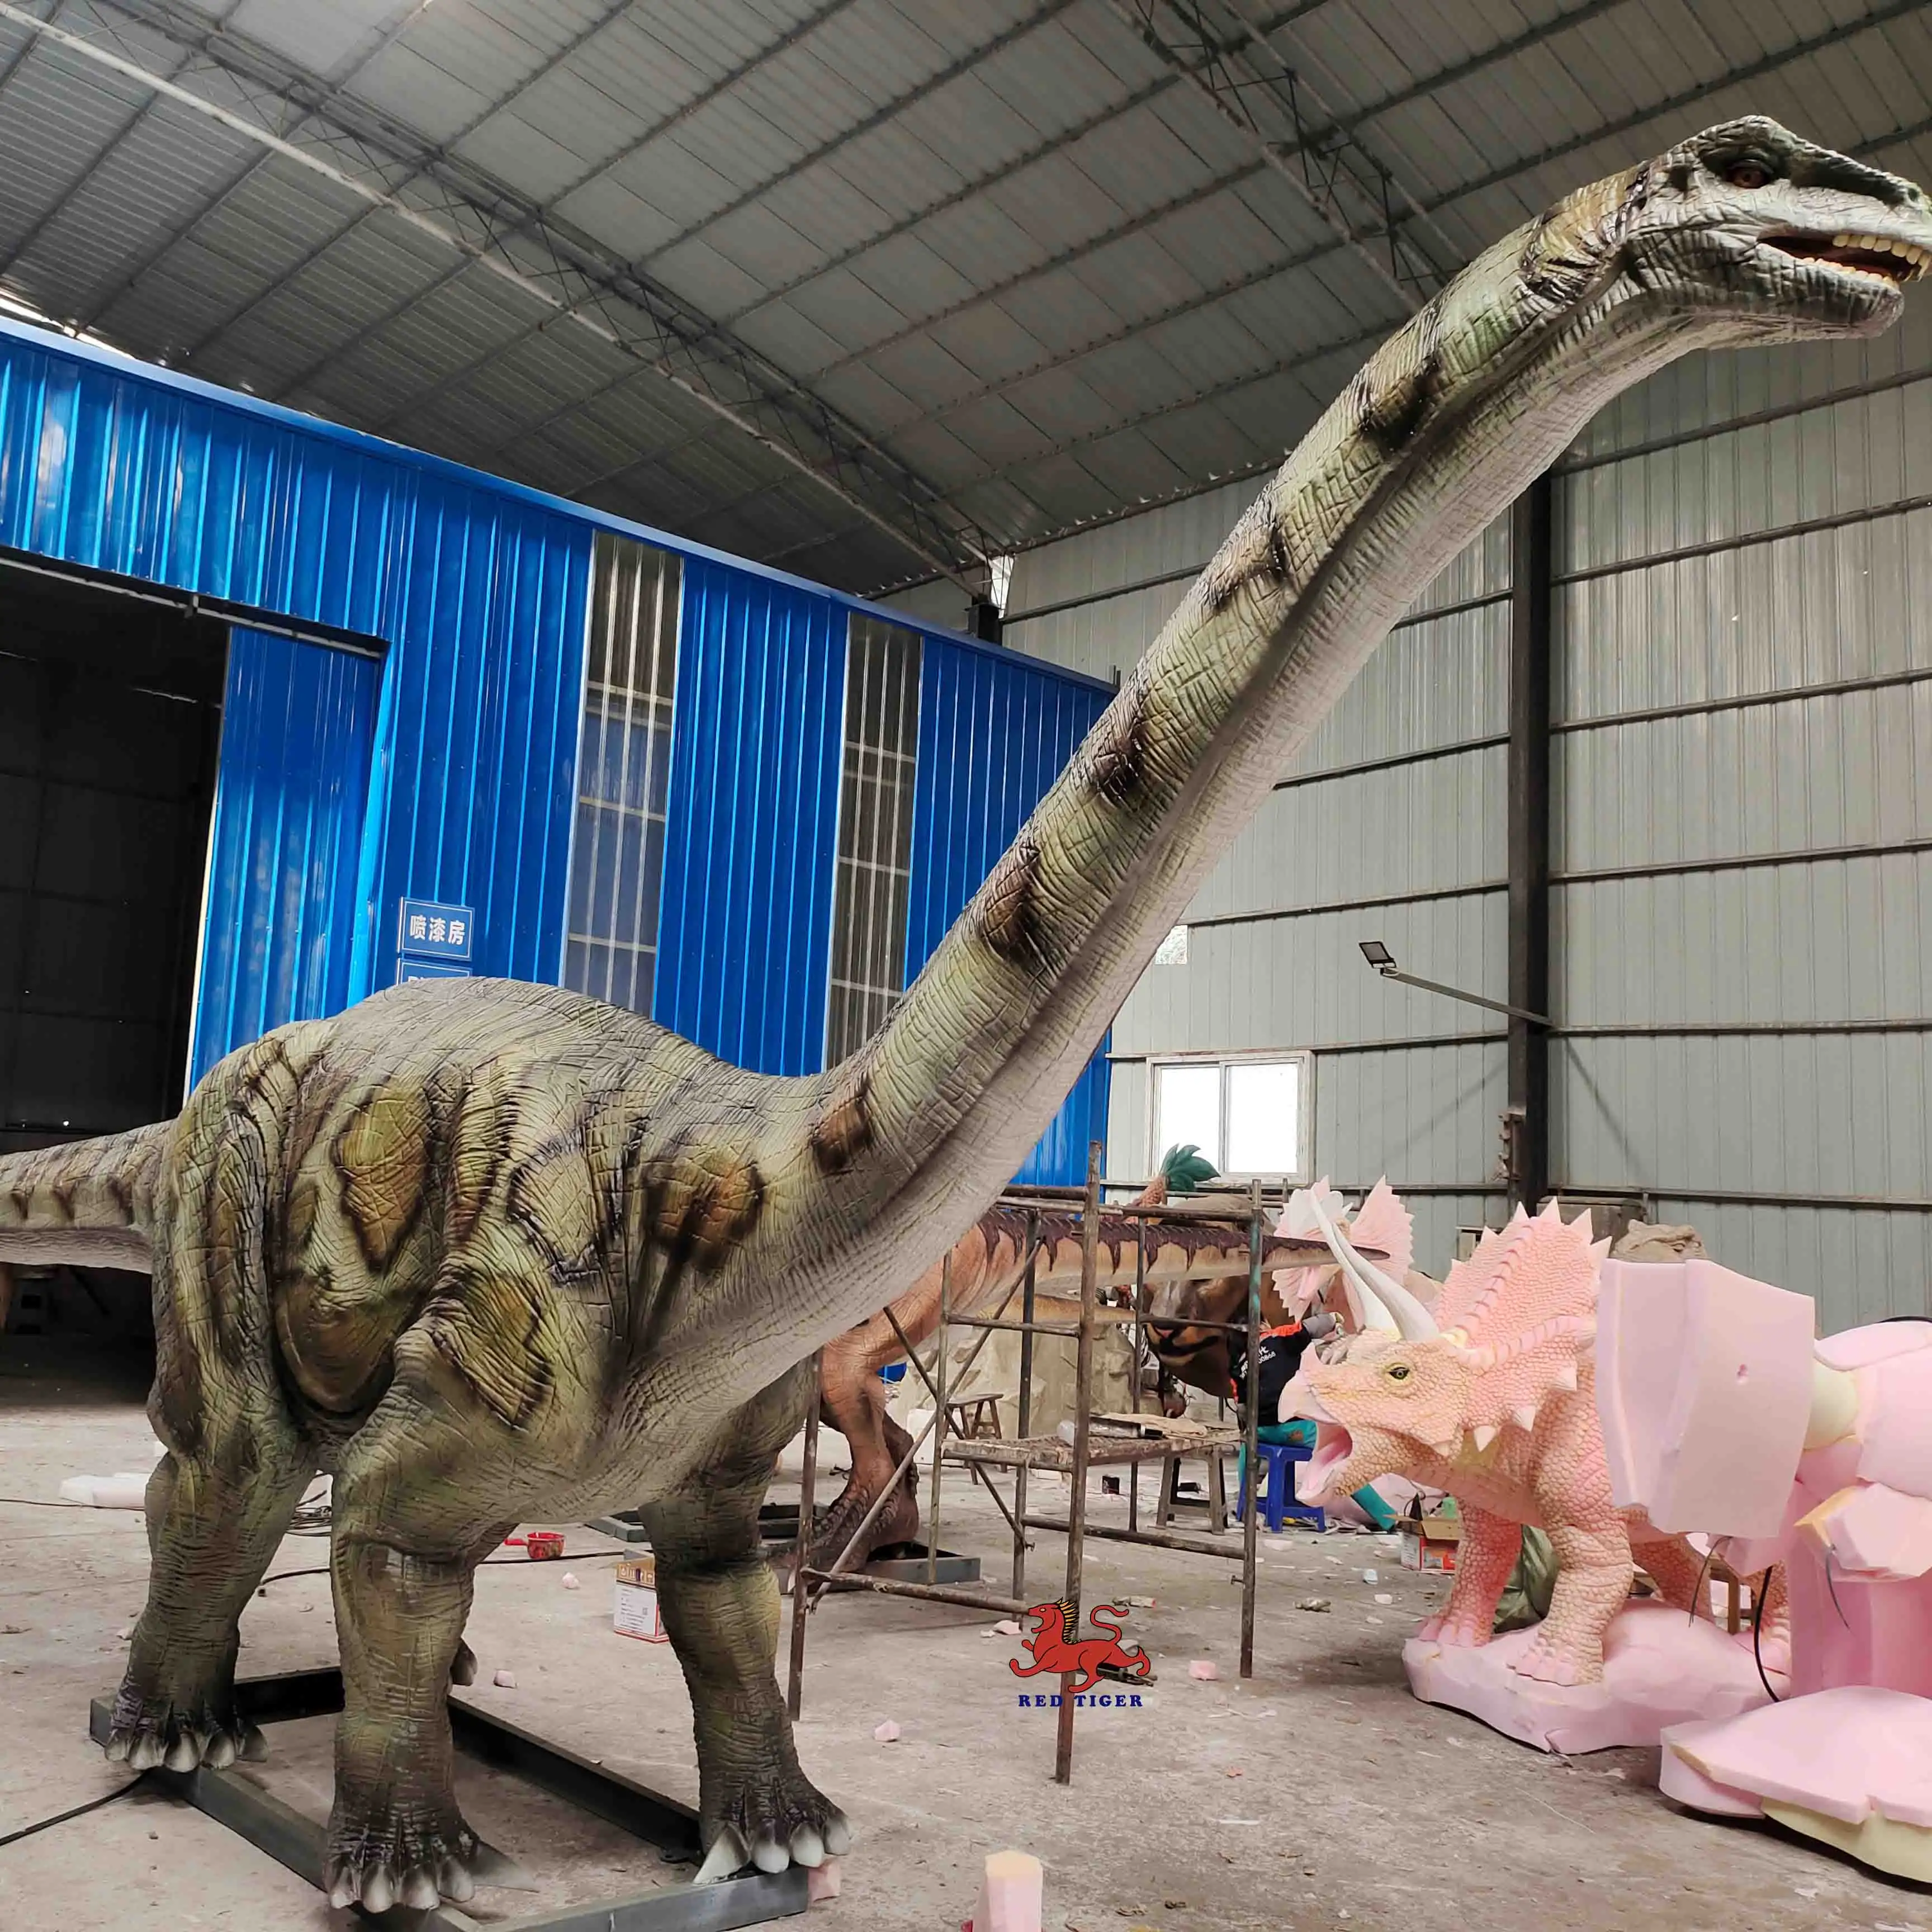 Реалистичная аниматронная статуя бронтозавра в натуральную величину динозавра на продажу